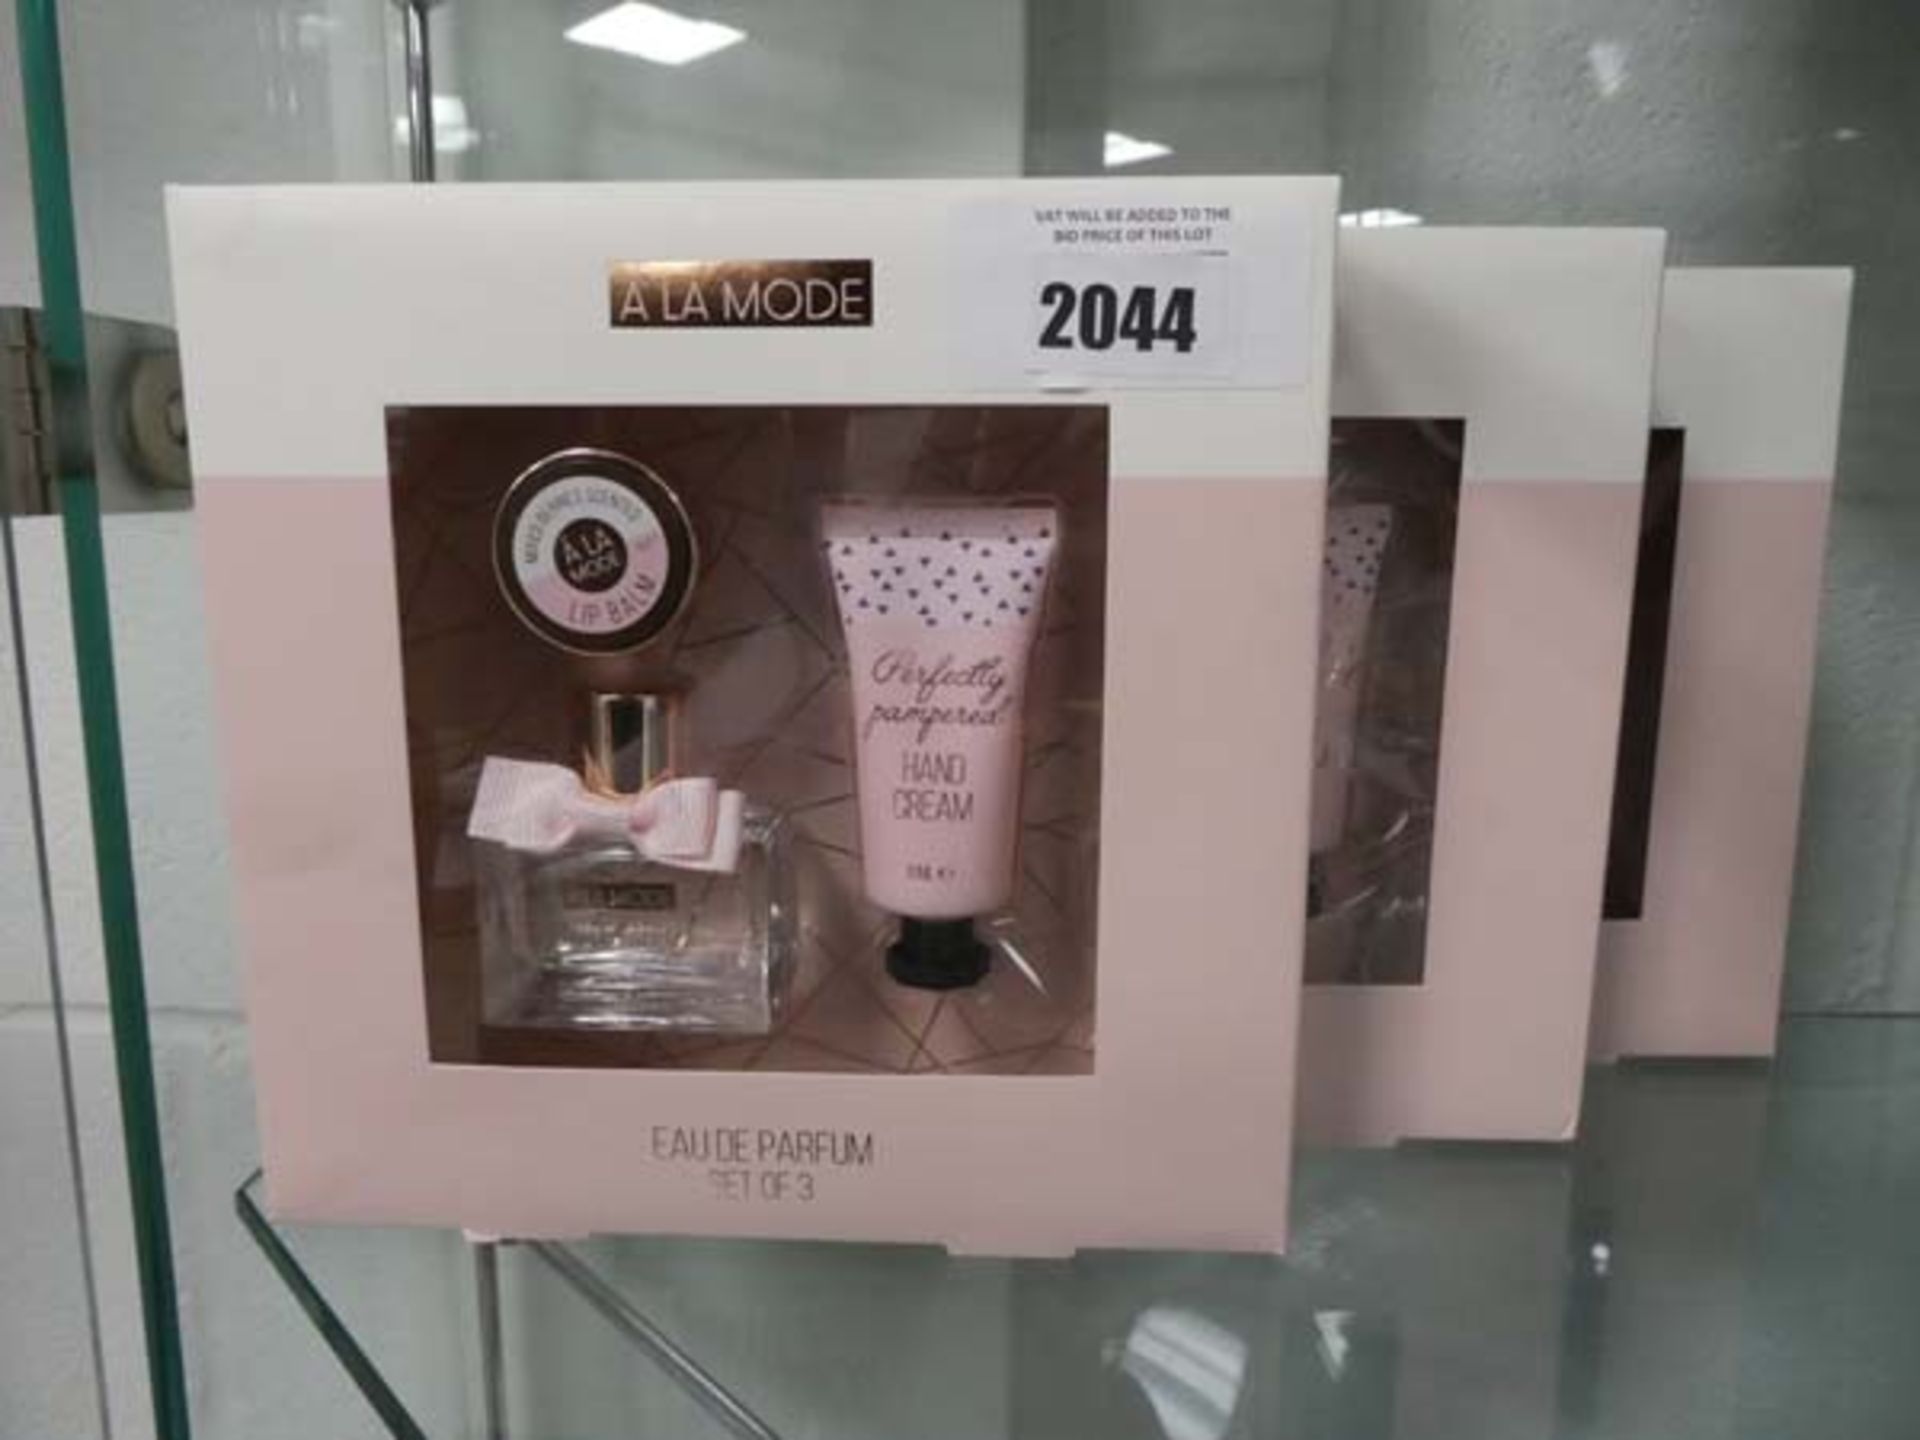 A La Mode set of 3 perfume gift set